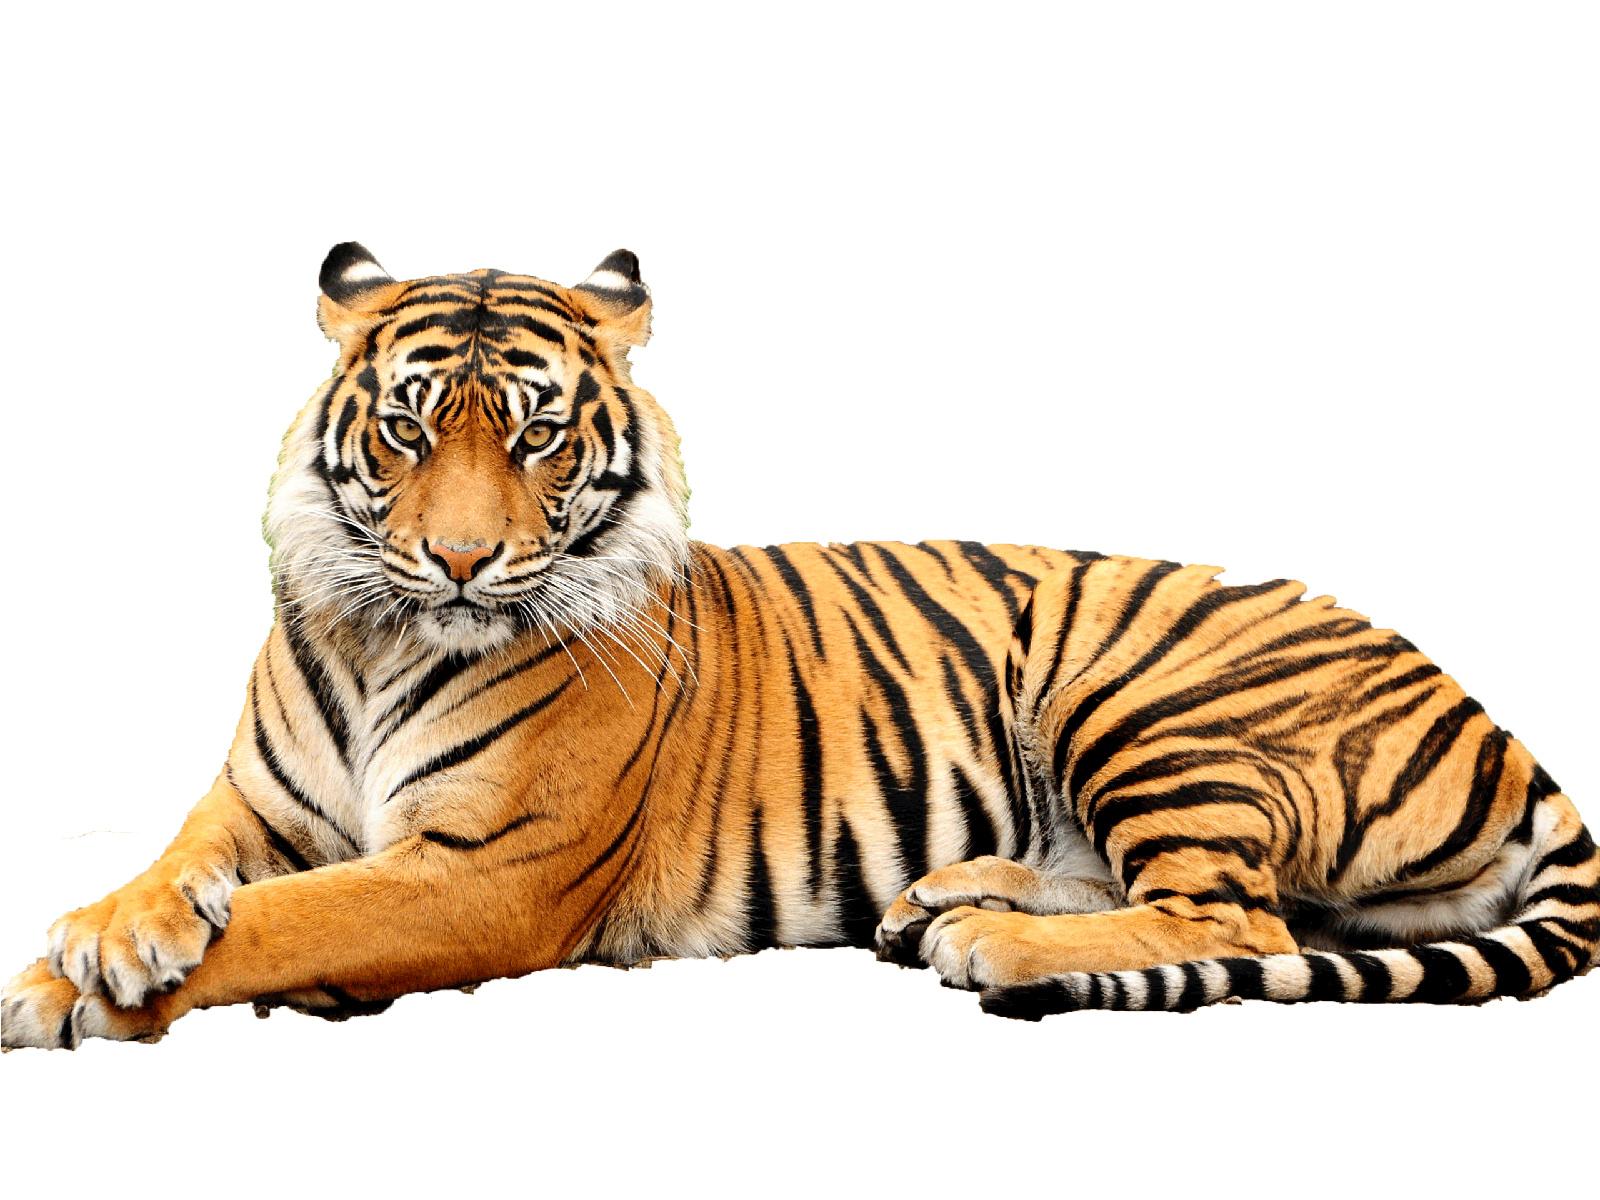 Tiger PNG Images Transparent Free Download